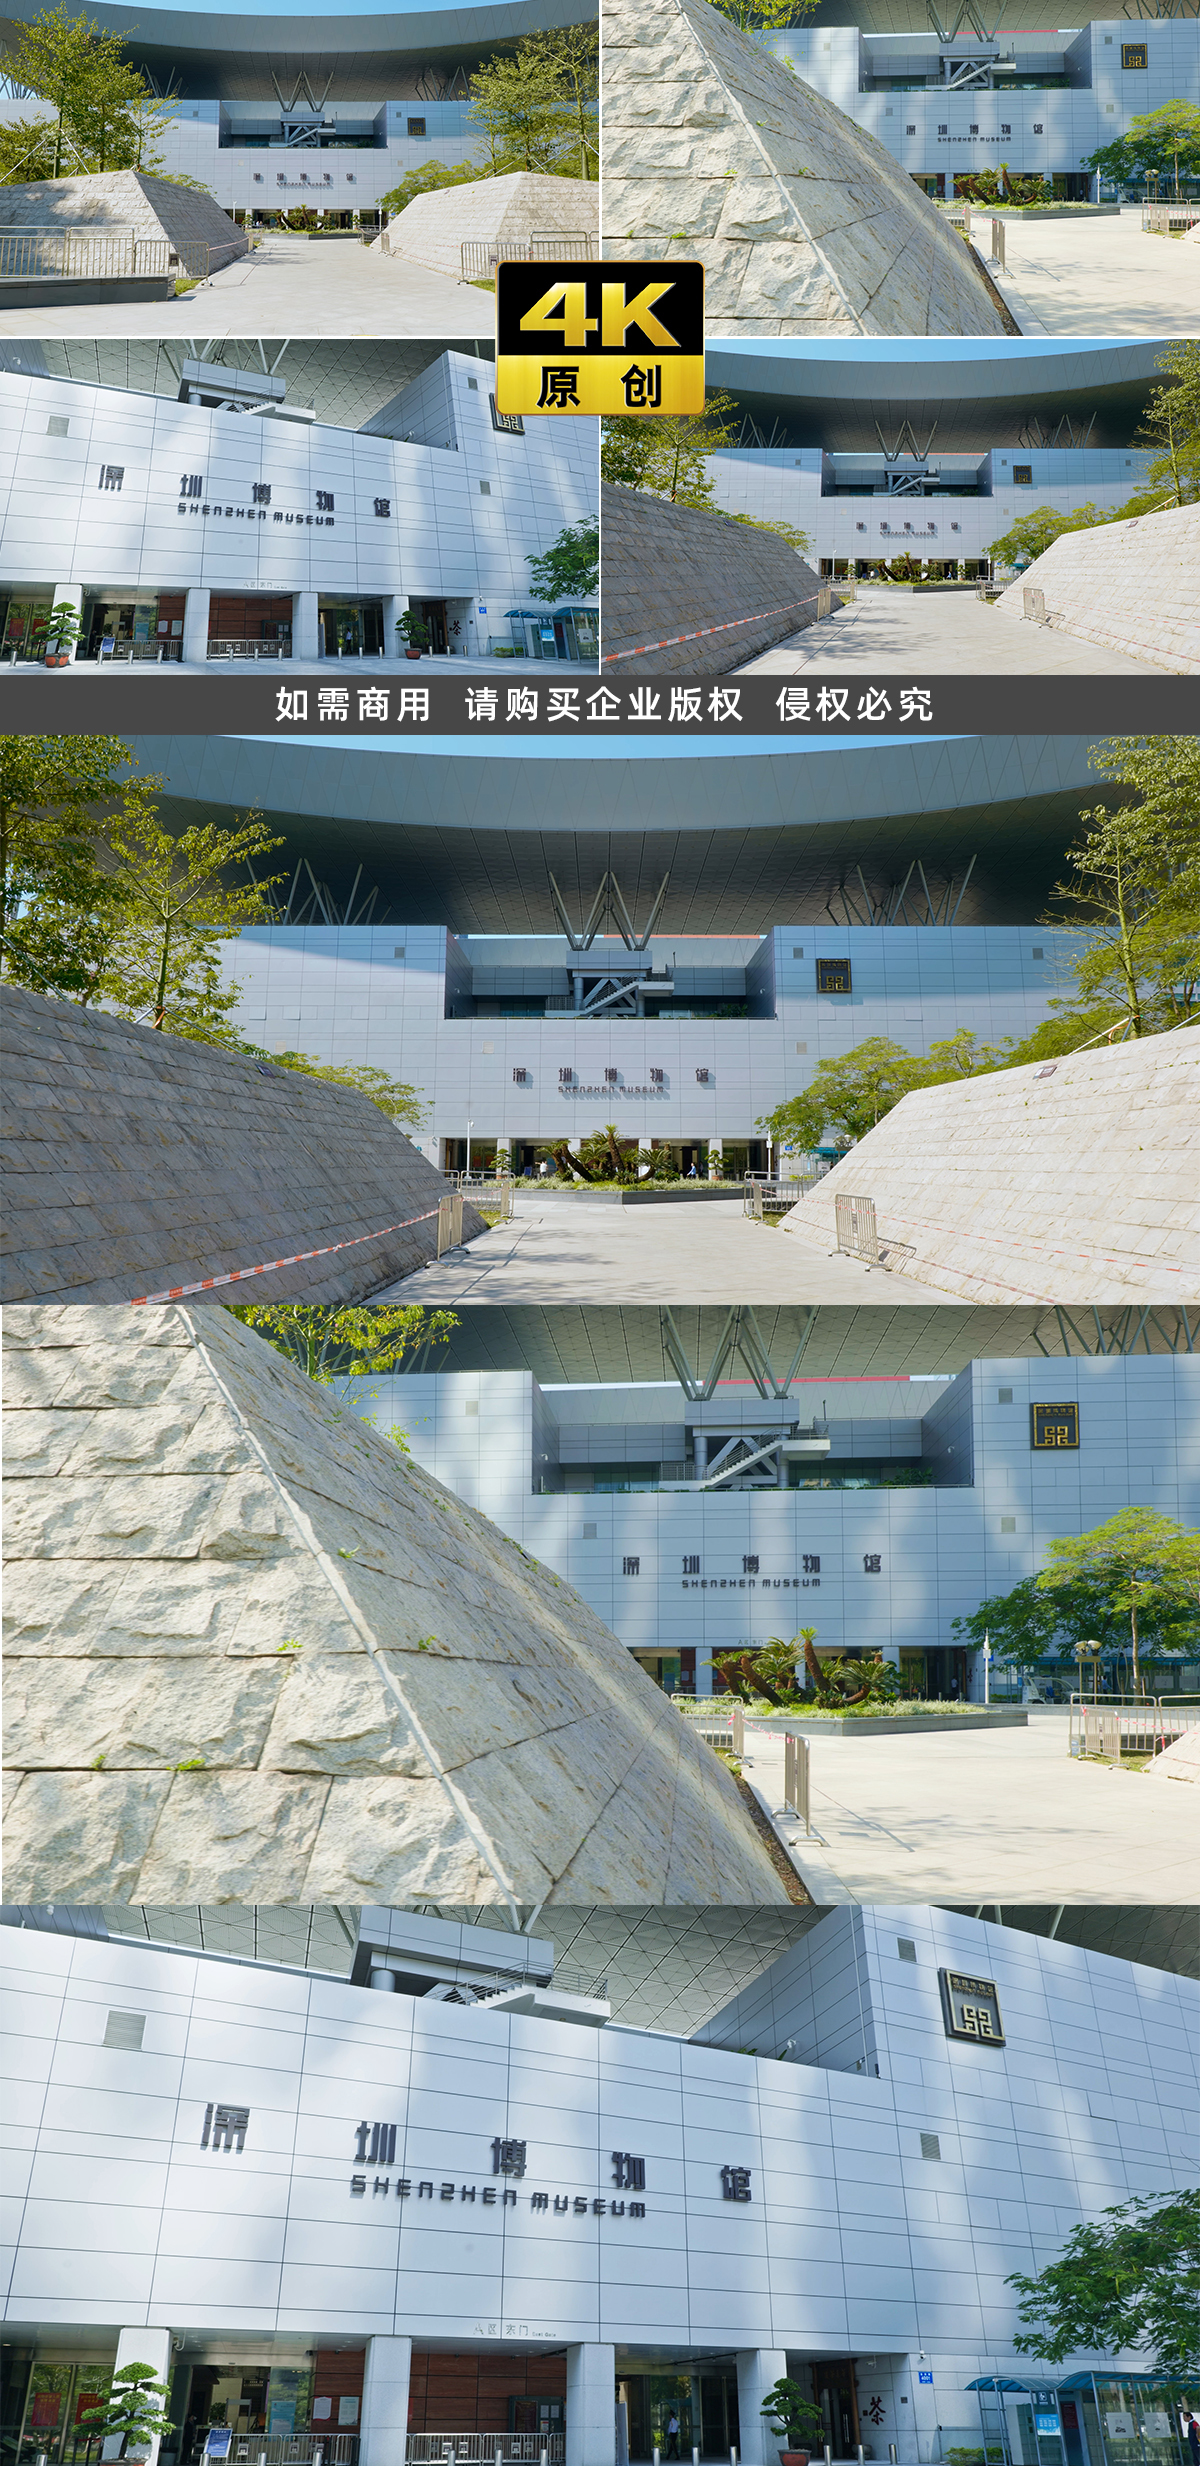 4K 深圳博物馆 城市经济 改革开放